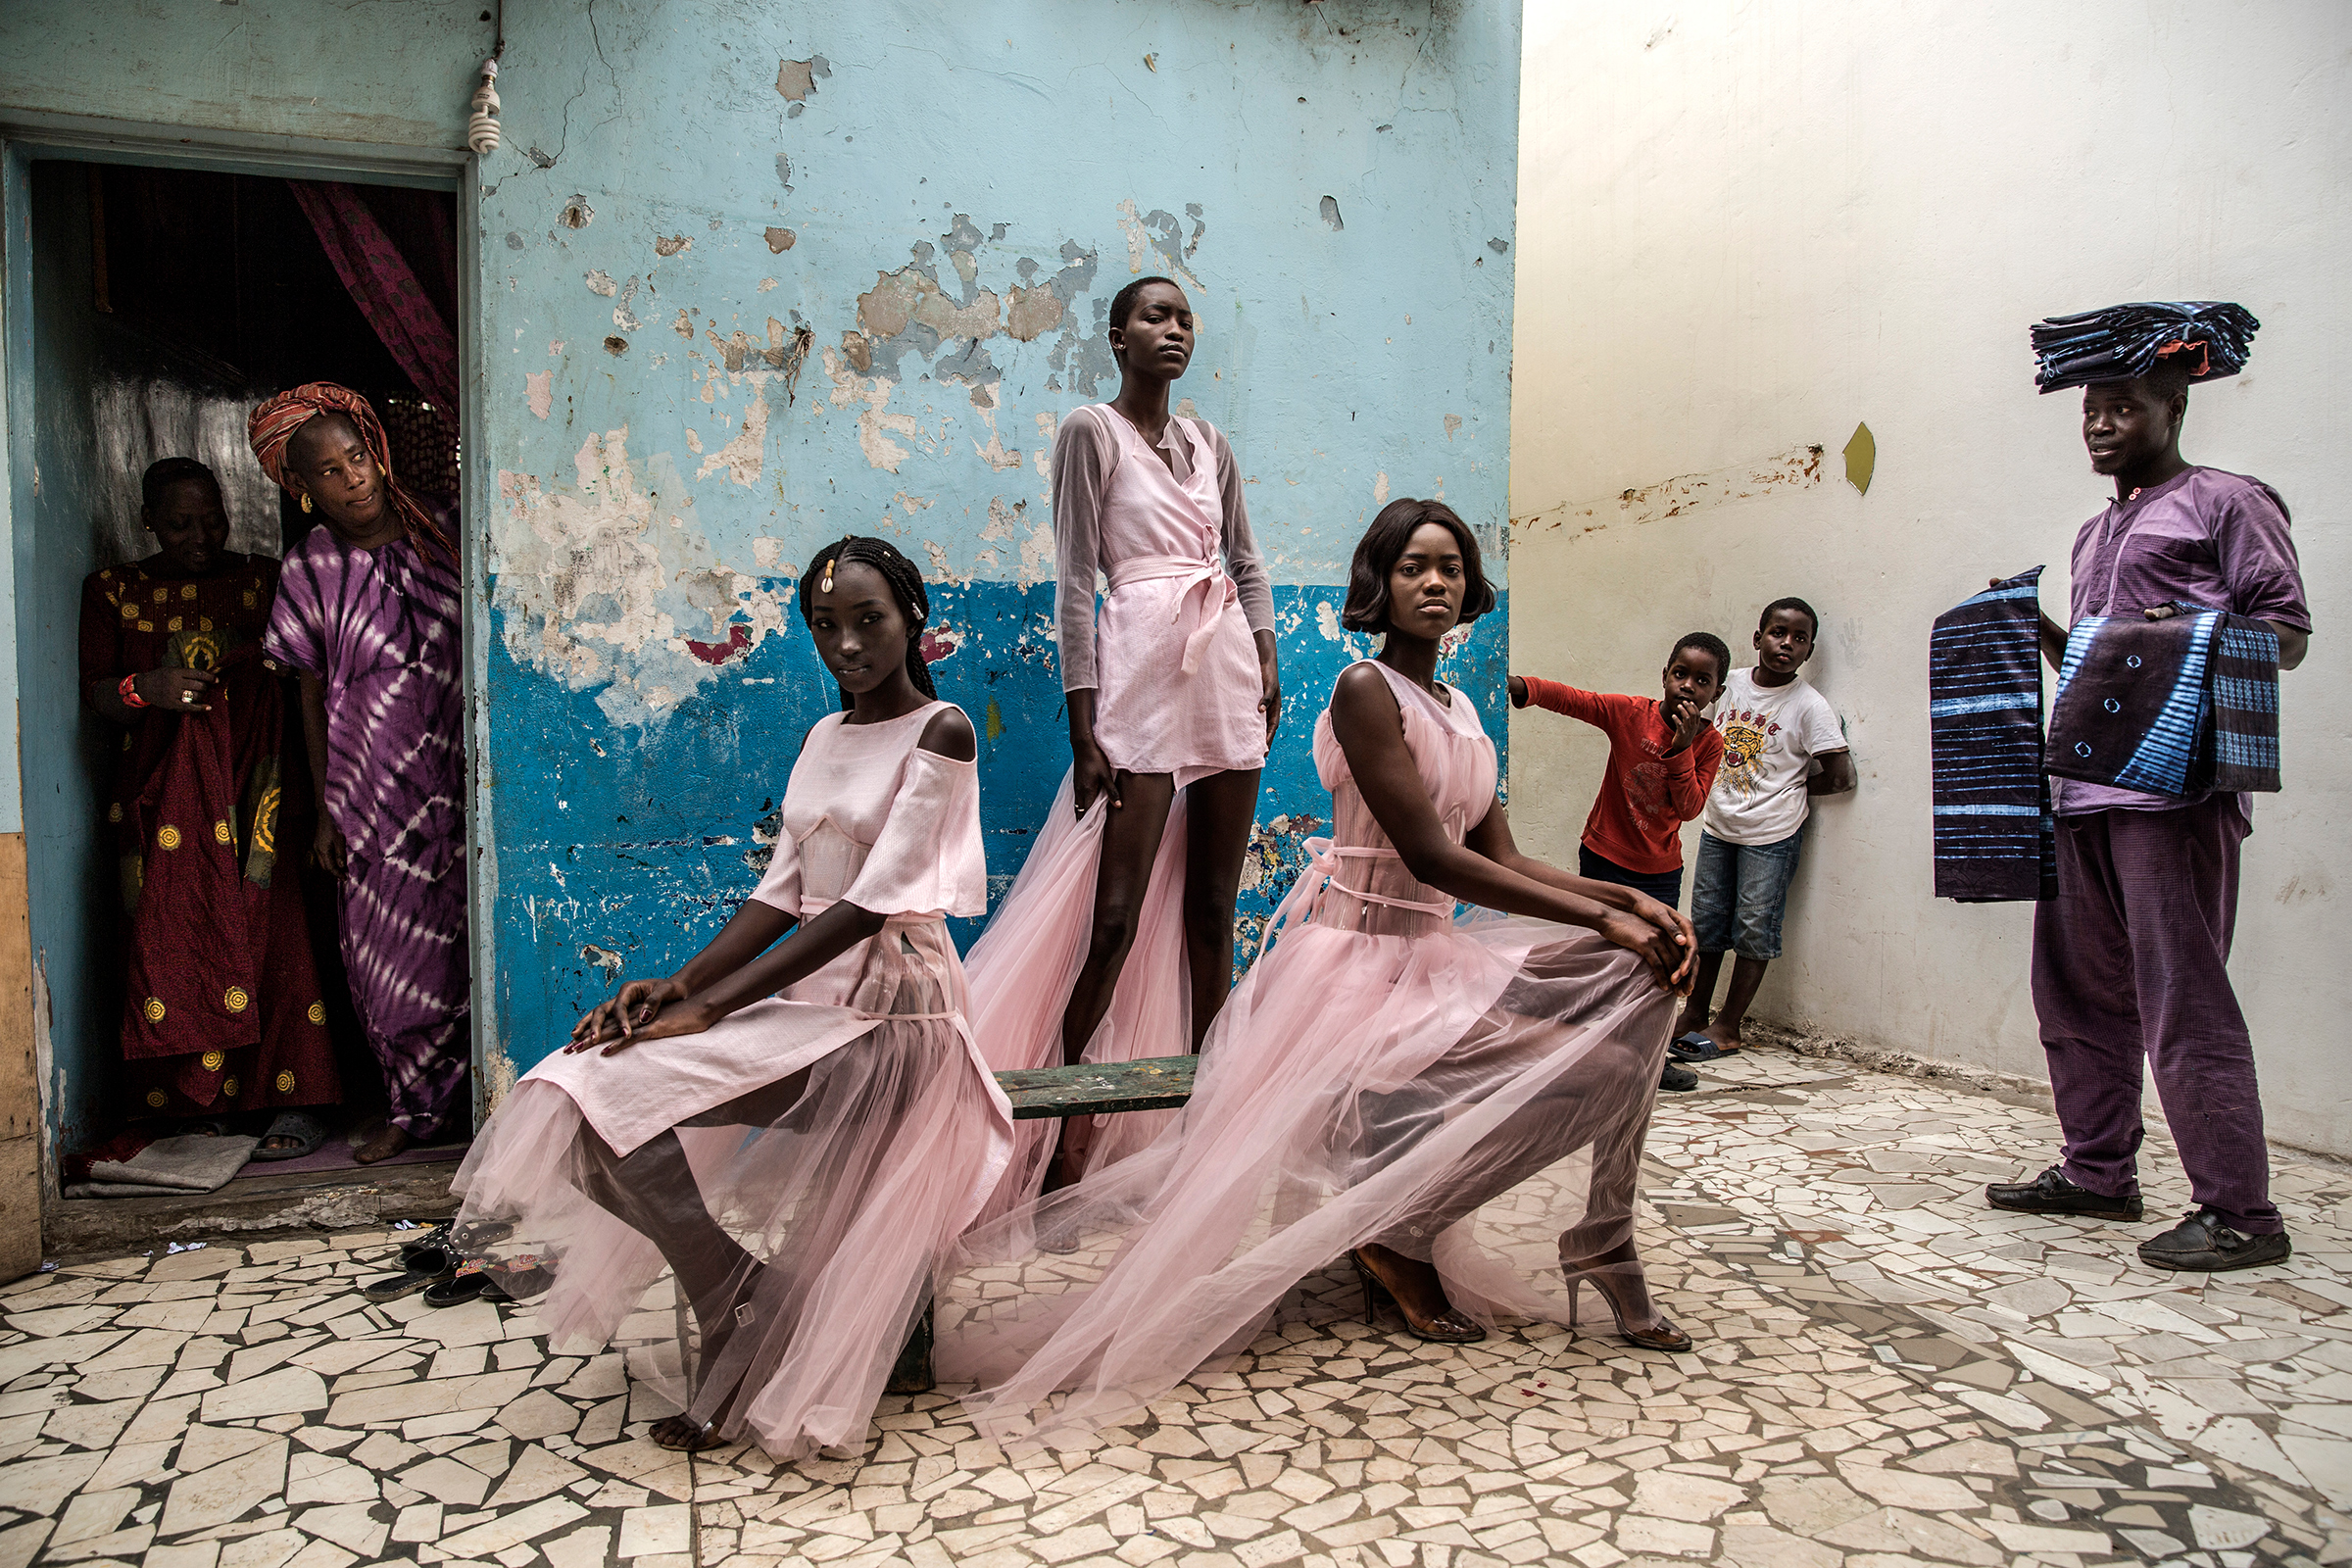 Автор:  Финбарр О&#39;Райли, Великобритания

Модели во время показа бренда Adama Paris в Дакаре, Сенегал. Дакар&nbsp;&mdash; растущий центр франко-африканской моды. Ежегодно проводимая в нем Неделя моды включает открытое для всех уличное шоу, в котором принимают участие тысячи людей со всего города
